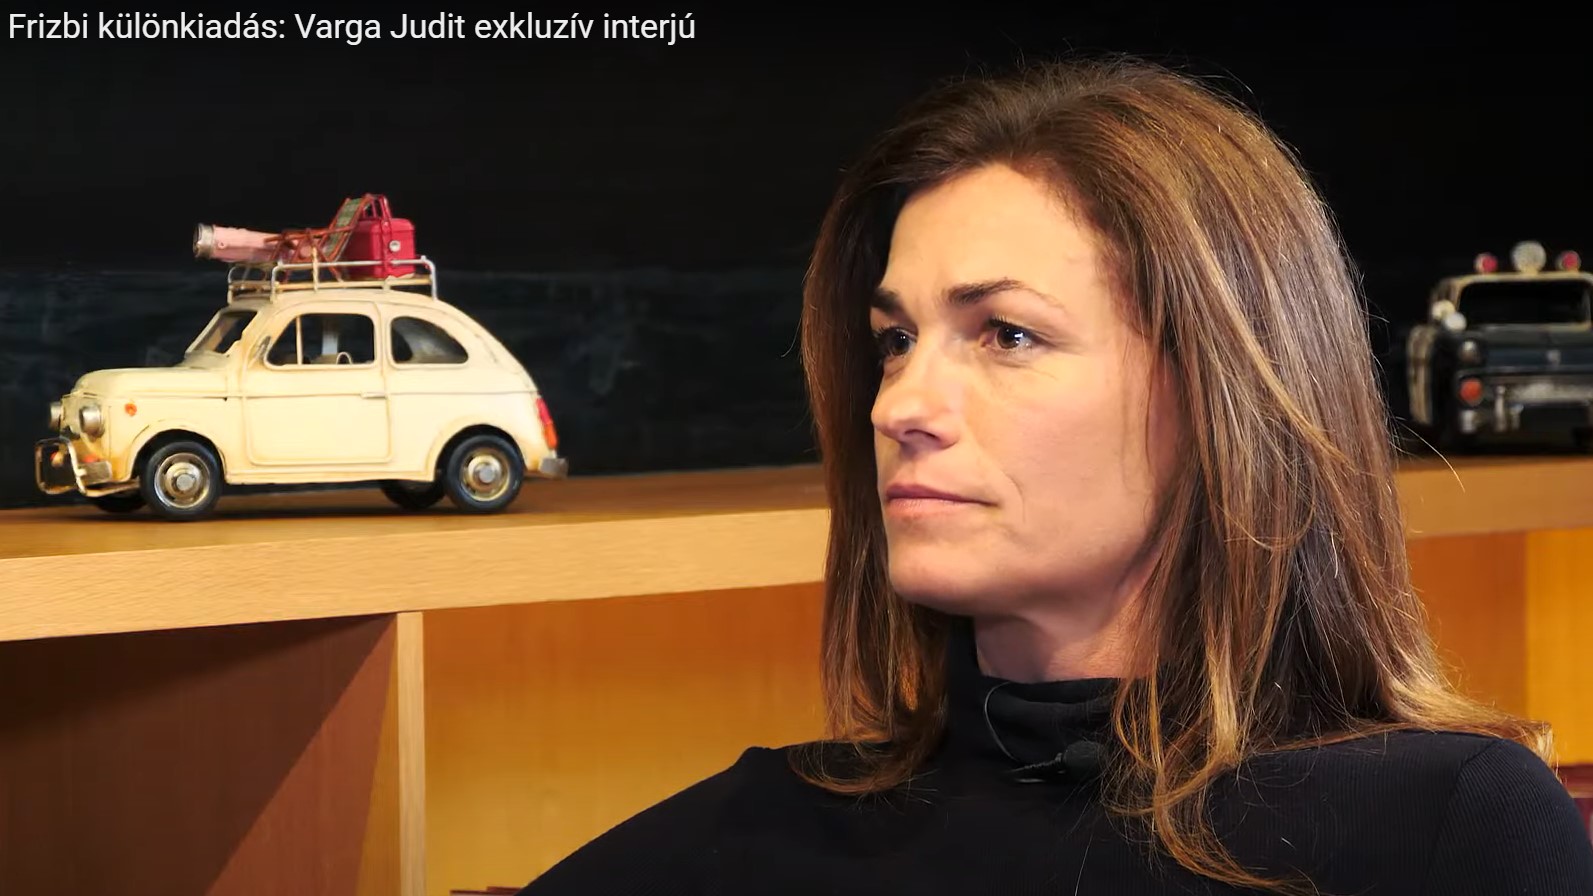 Varga Judit: Mindig azzal próbált sakkban tartani, hogy kitálal az otthon történtekről 